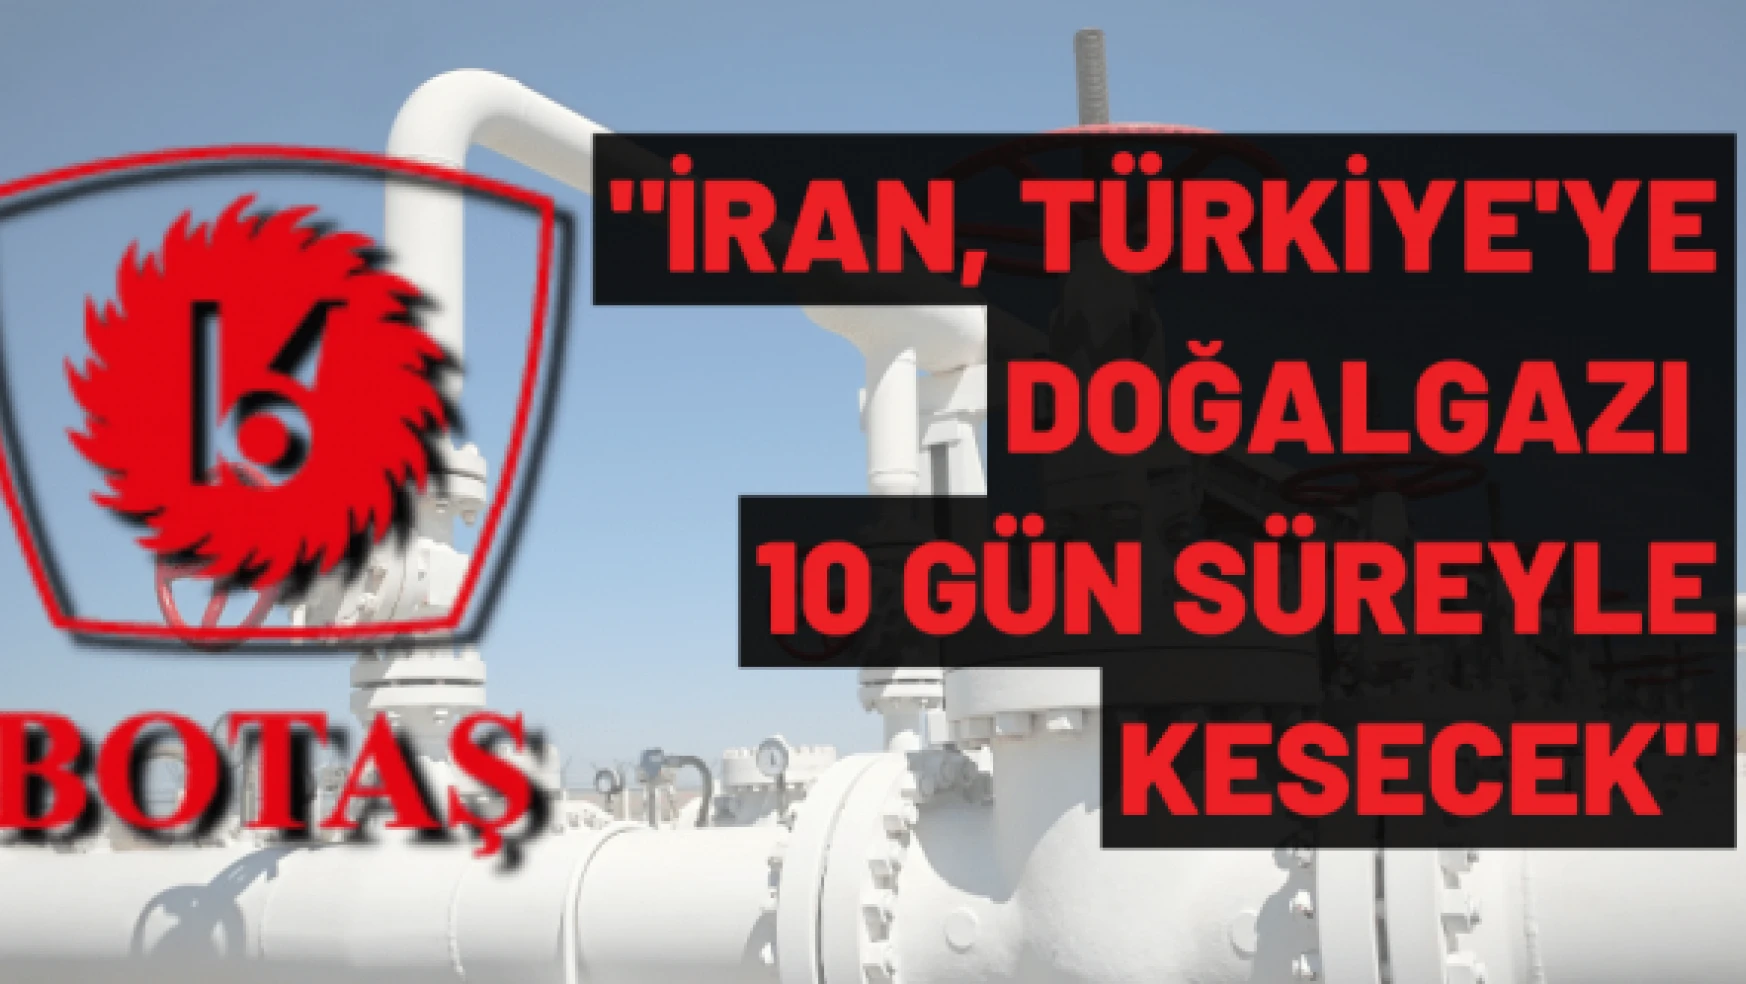 BOTAŞ: "İran, Türkiye'ye doğalgazı 10 gün süreyle kesecek"